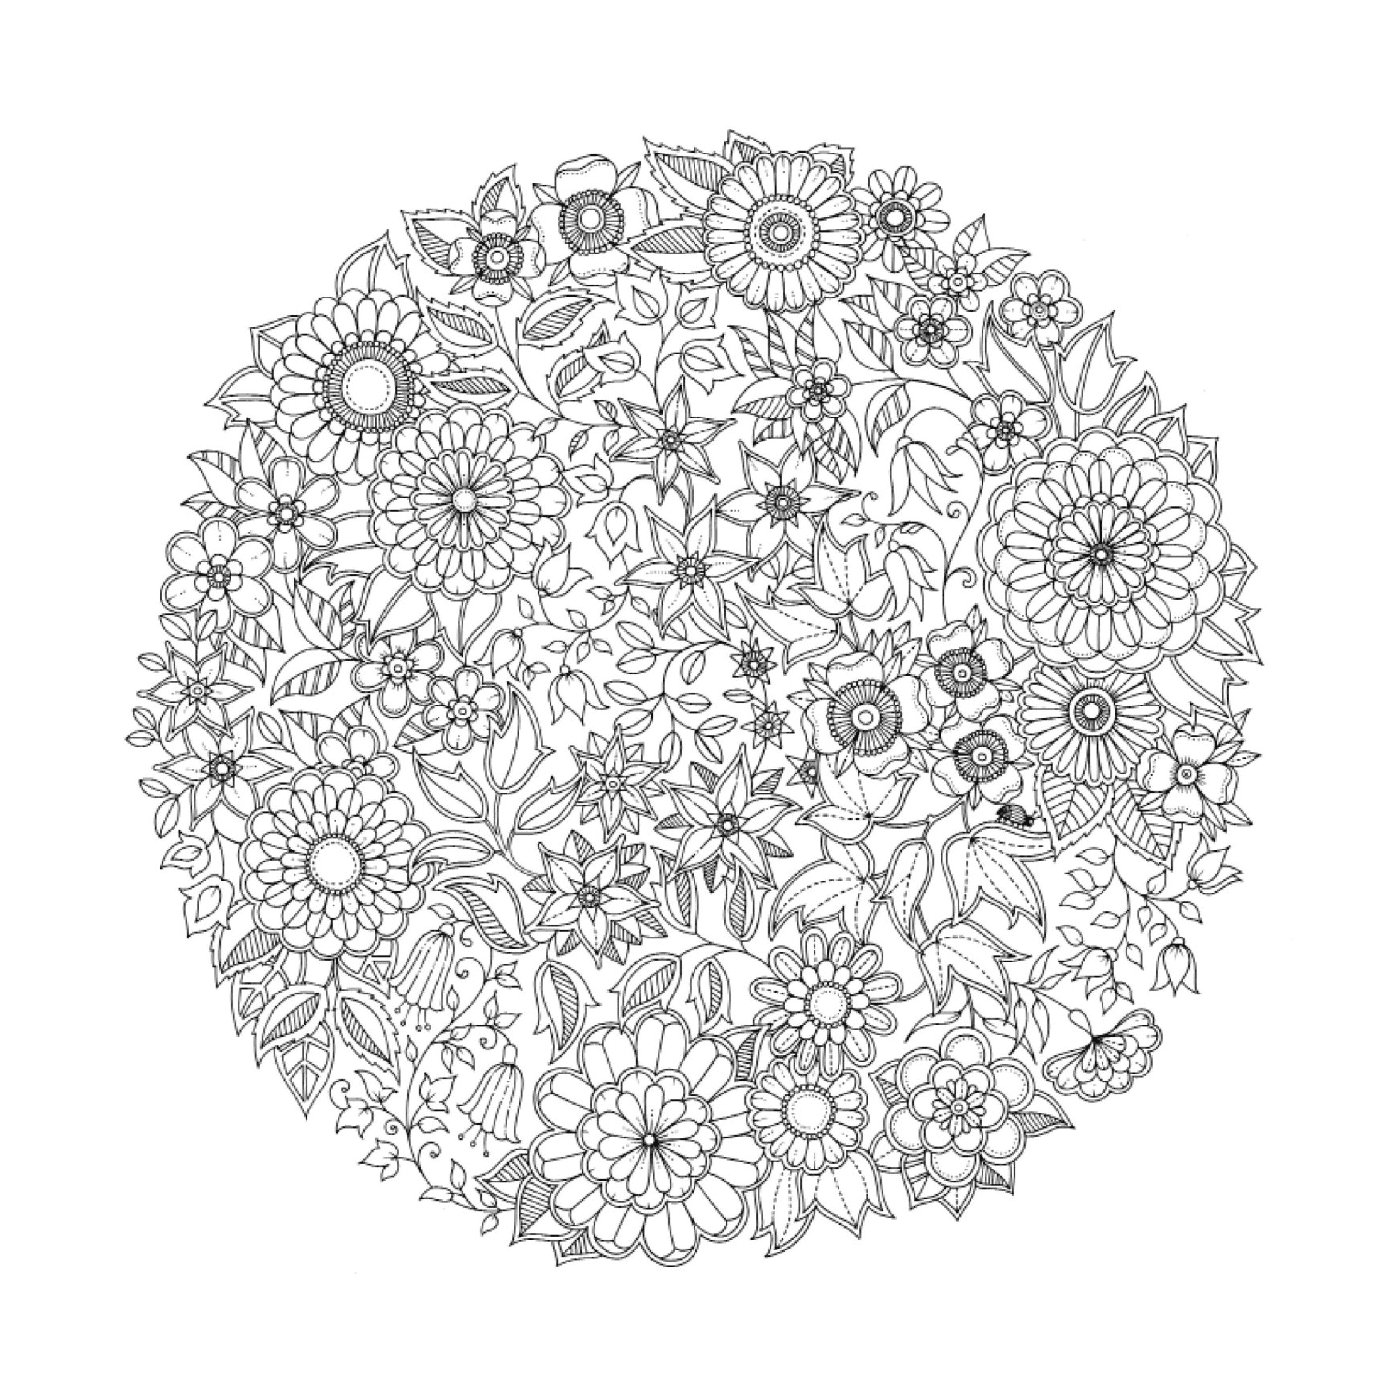   un motif circulaire de fleurs en noir et blanc difficile à identifier 